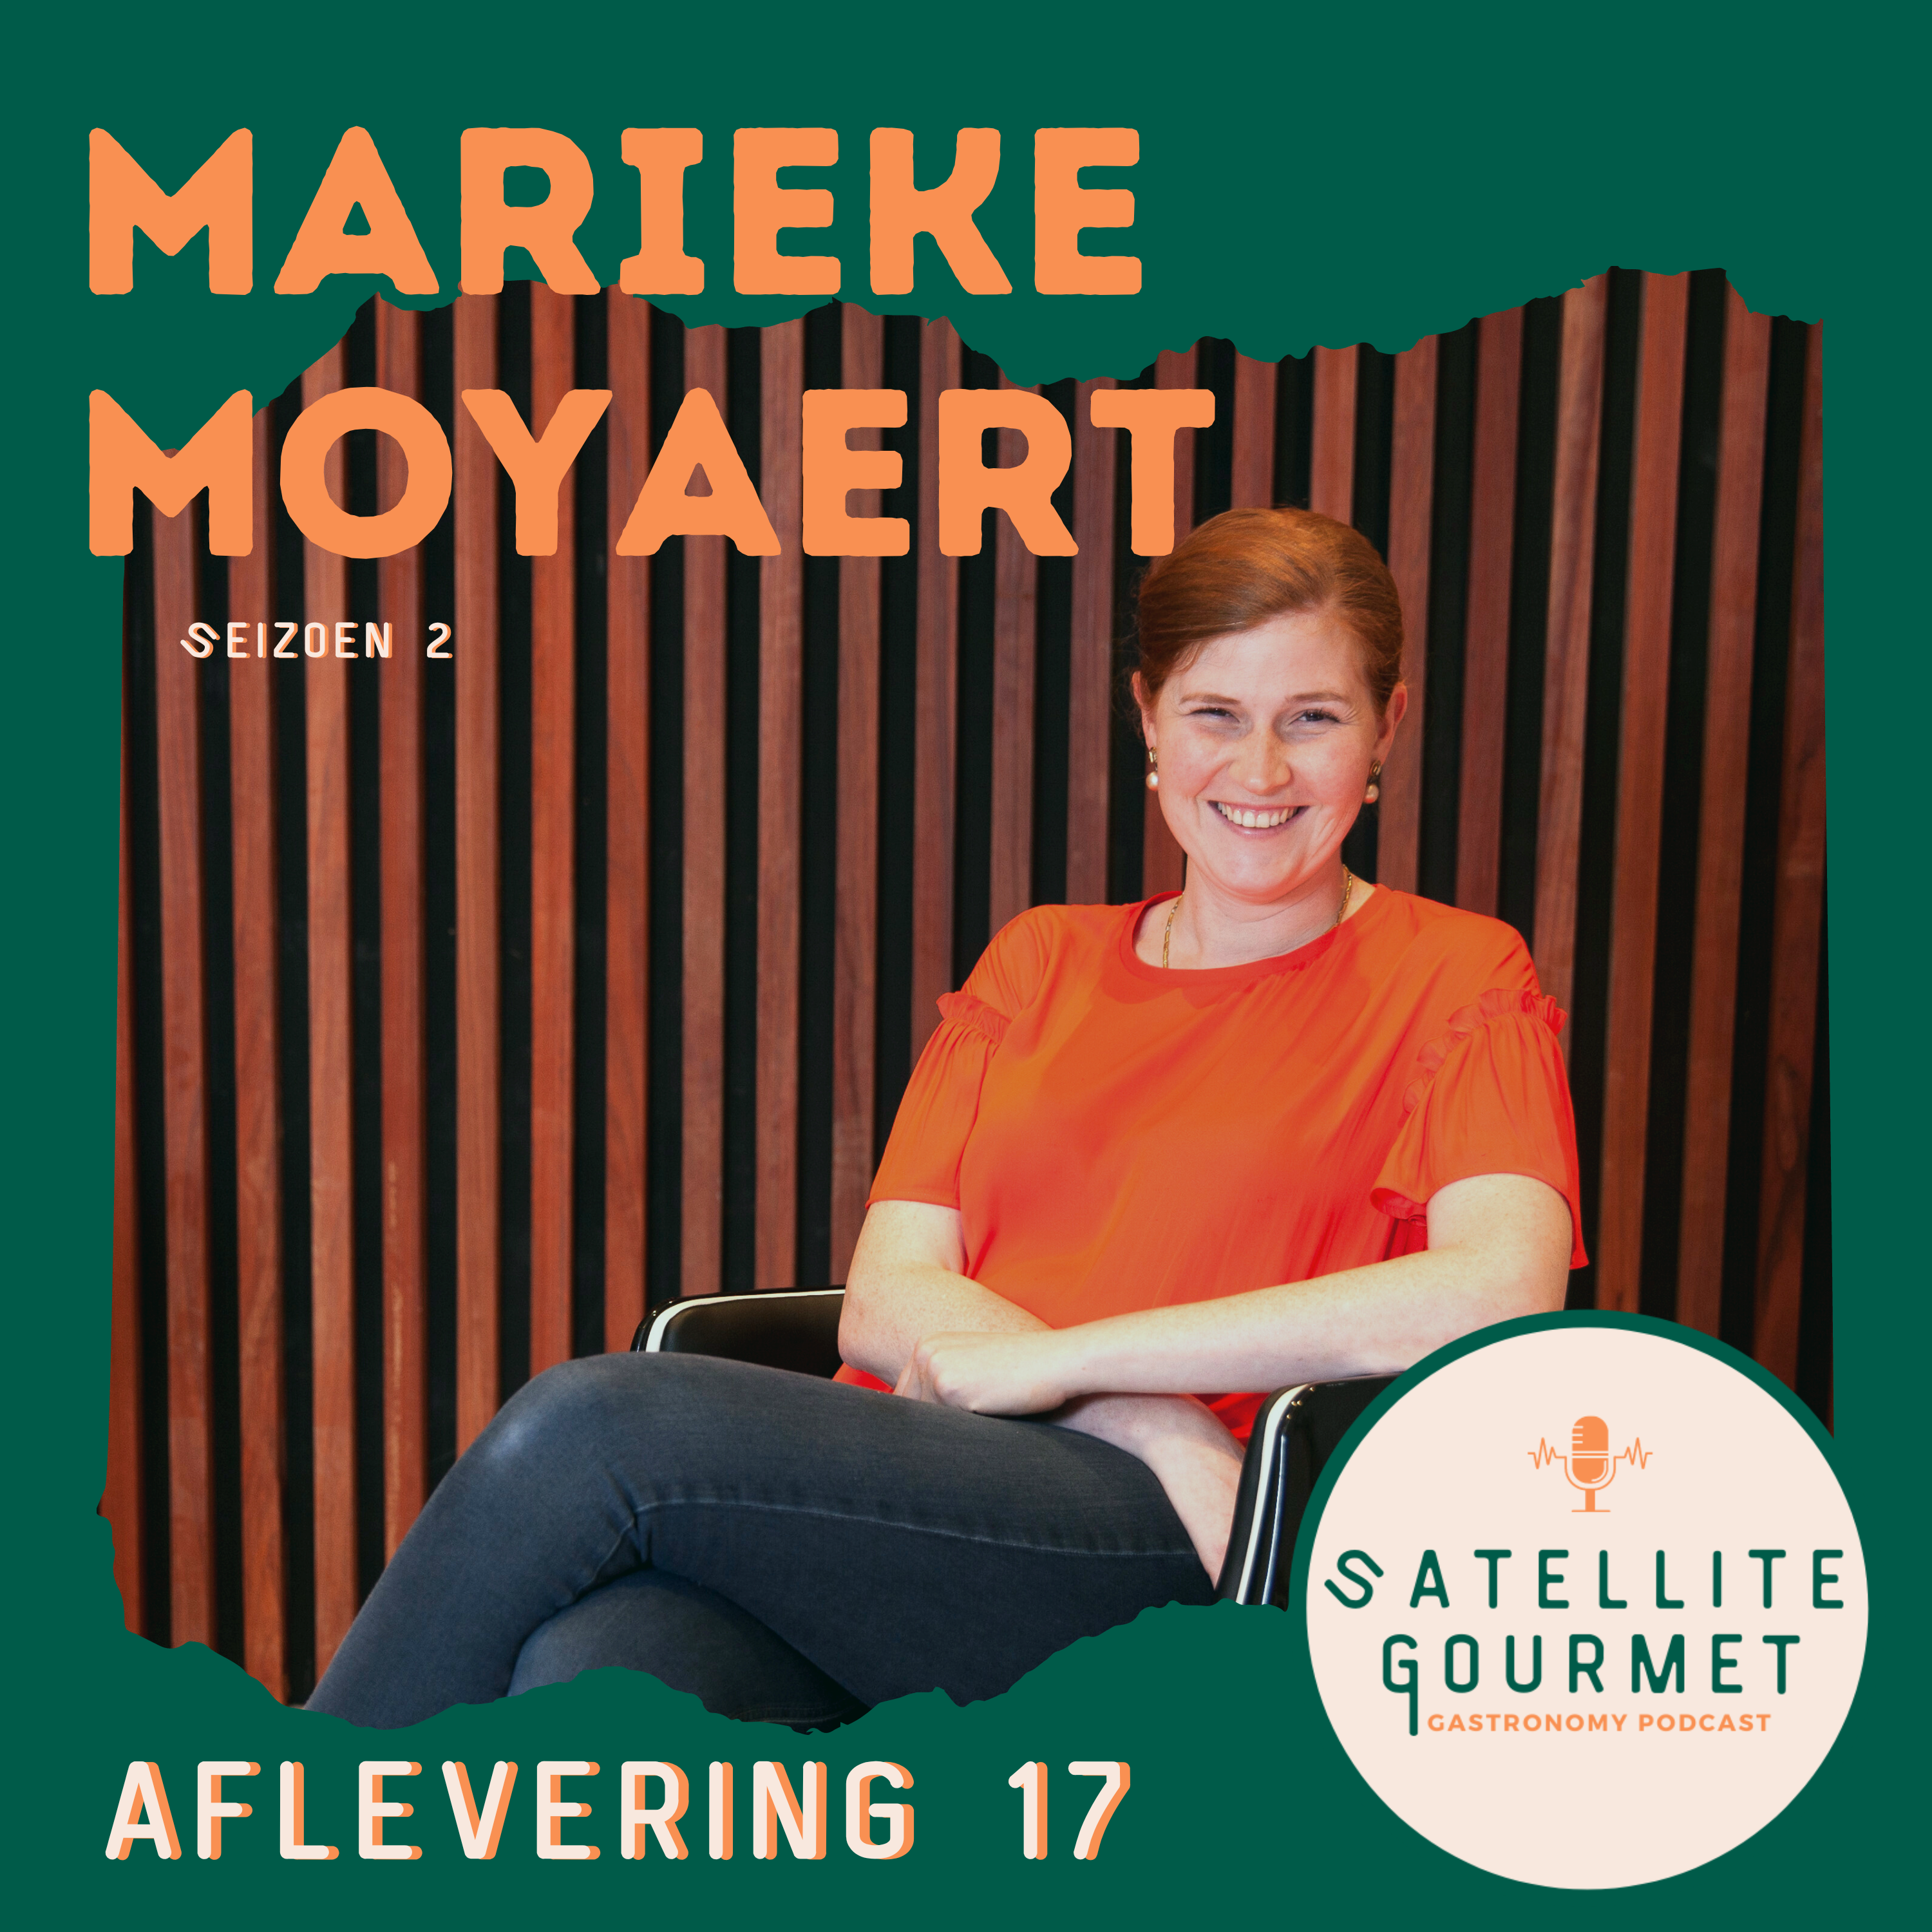 Marieke Moyaert